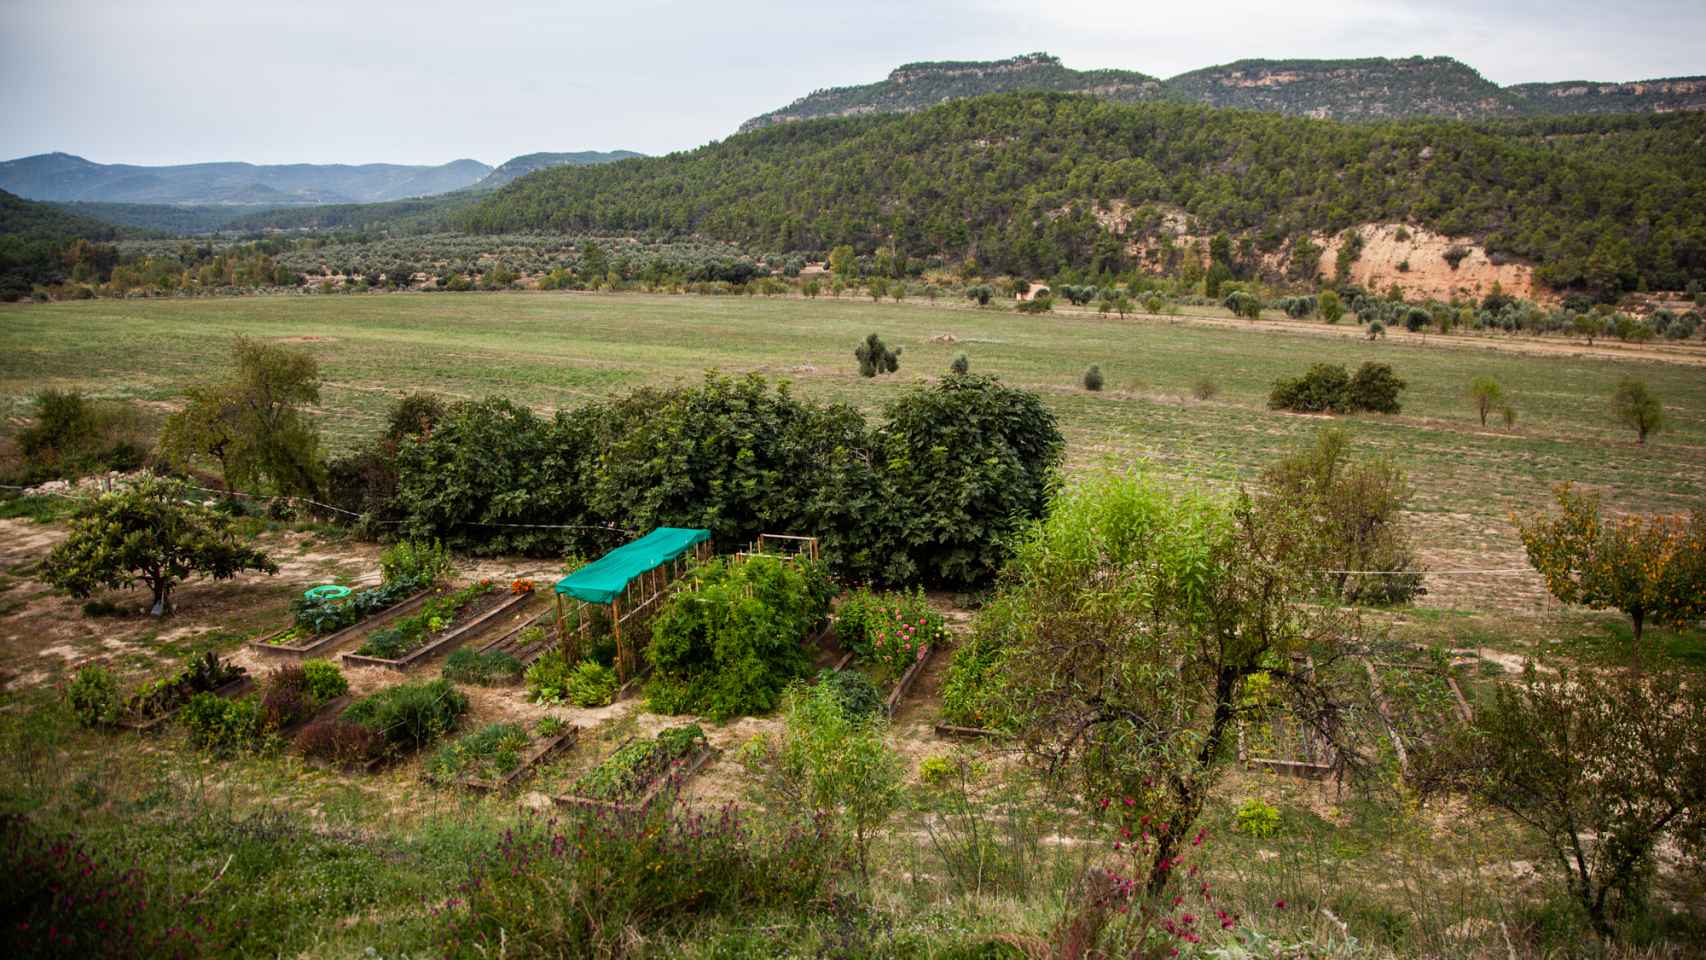 Vista de la comarca del Matarraña desde los jardines aromáticos del hotel.